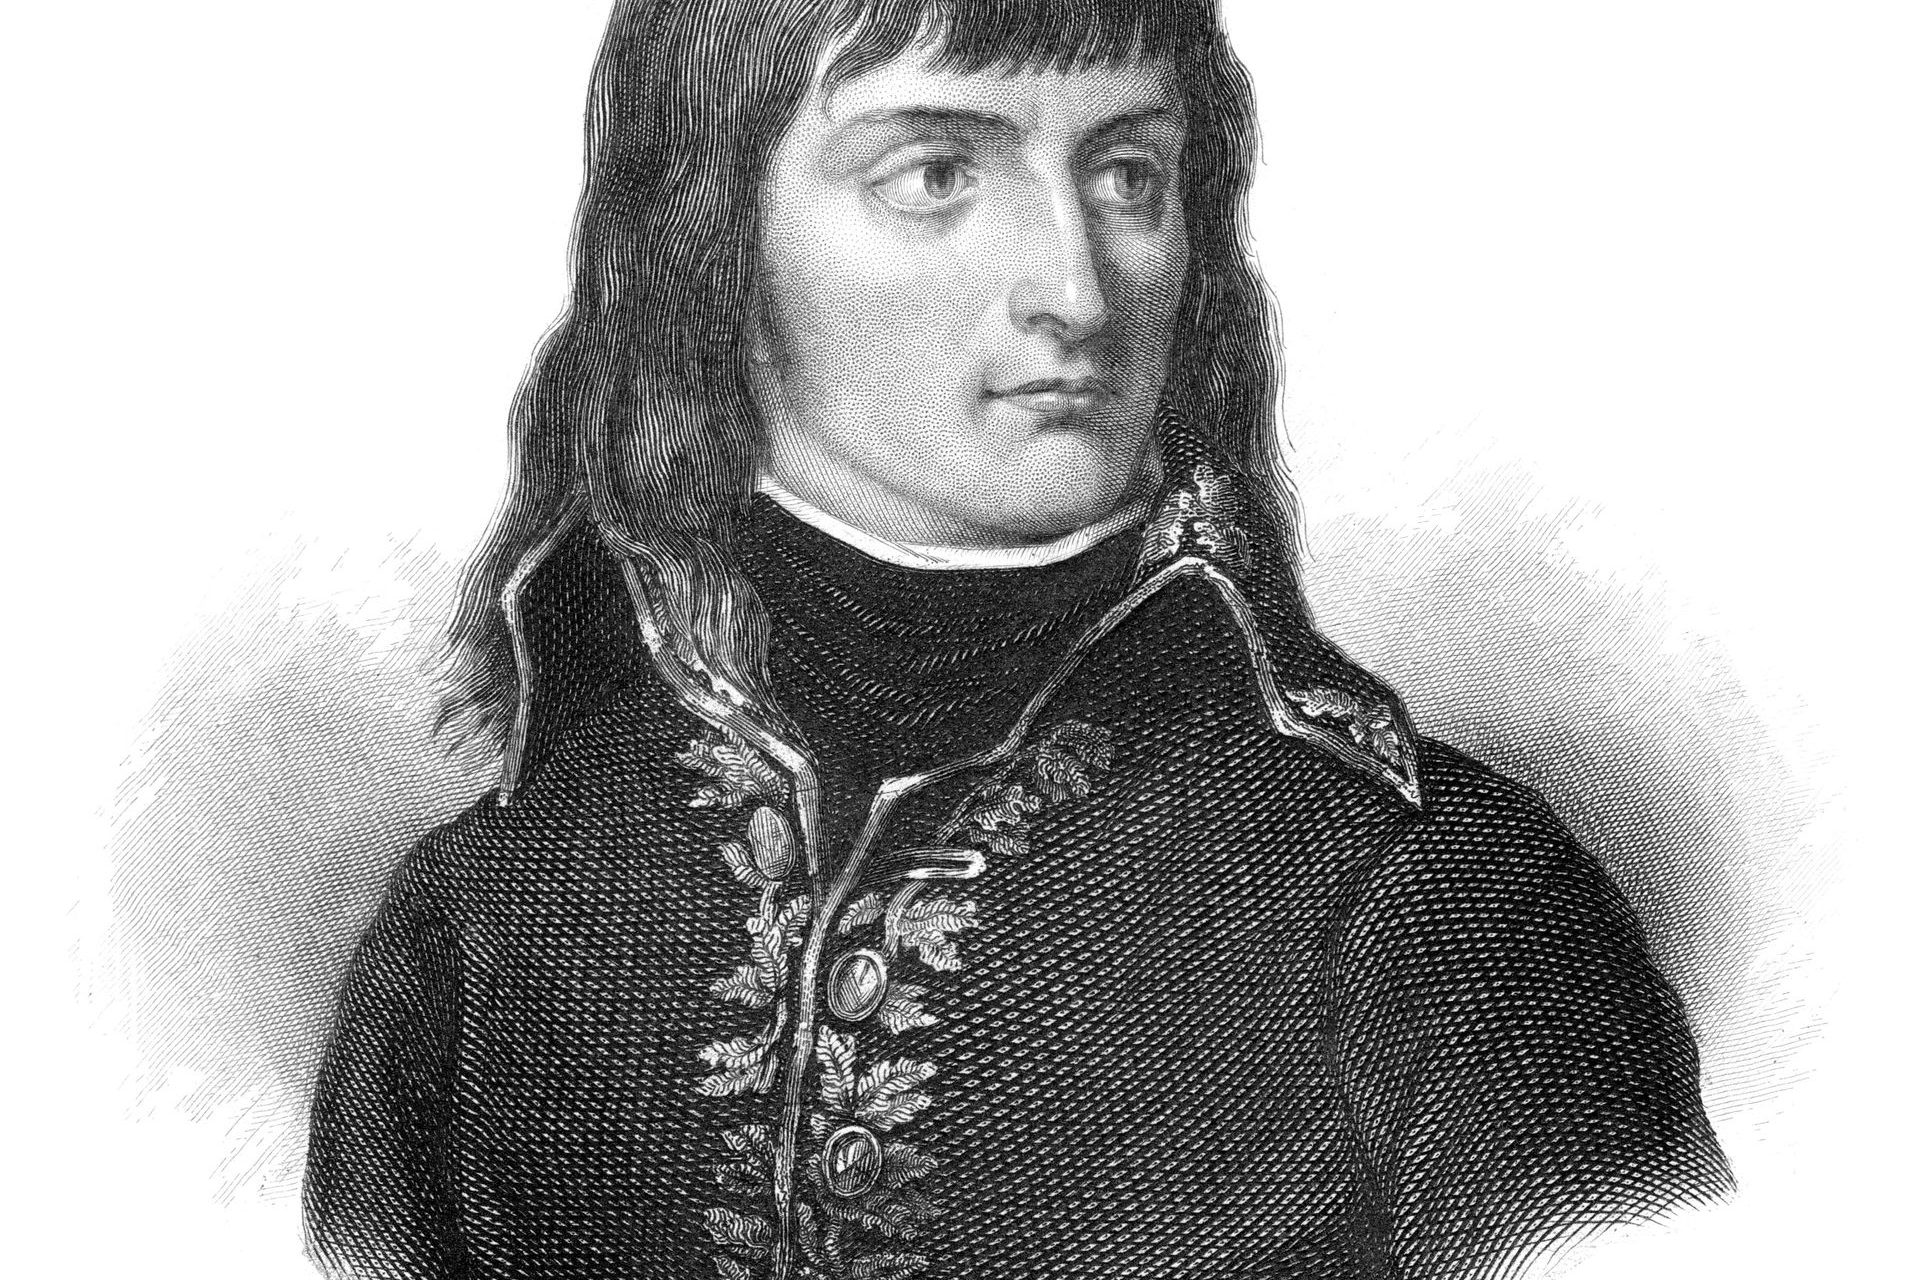 1769: birth of Napoleon Bonaparte in Corsica